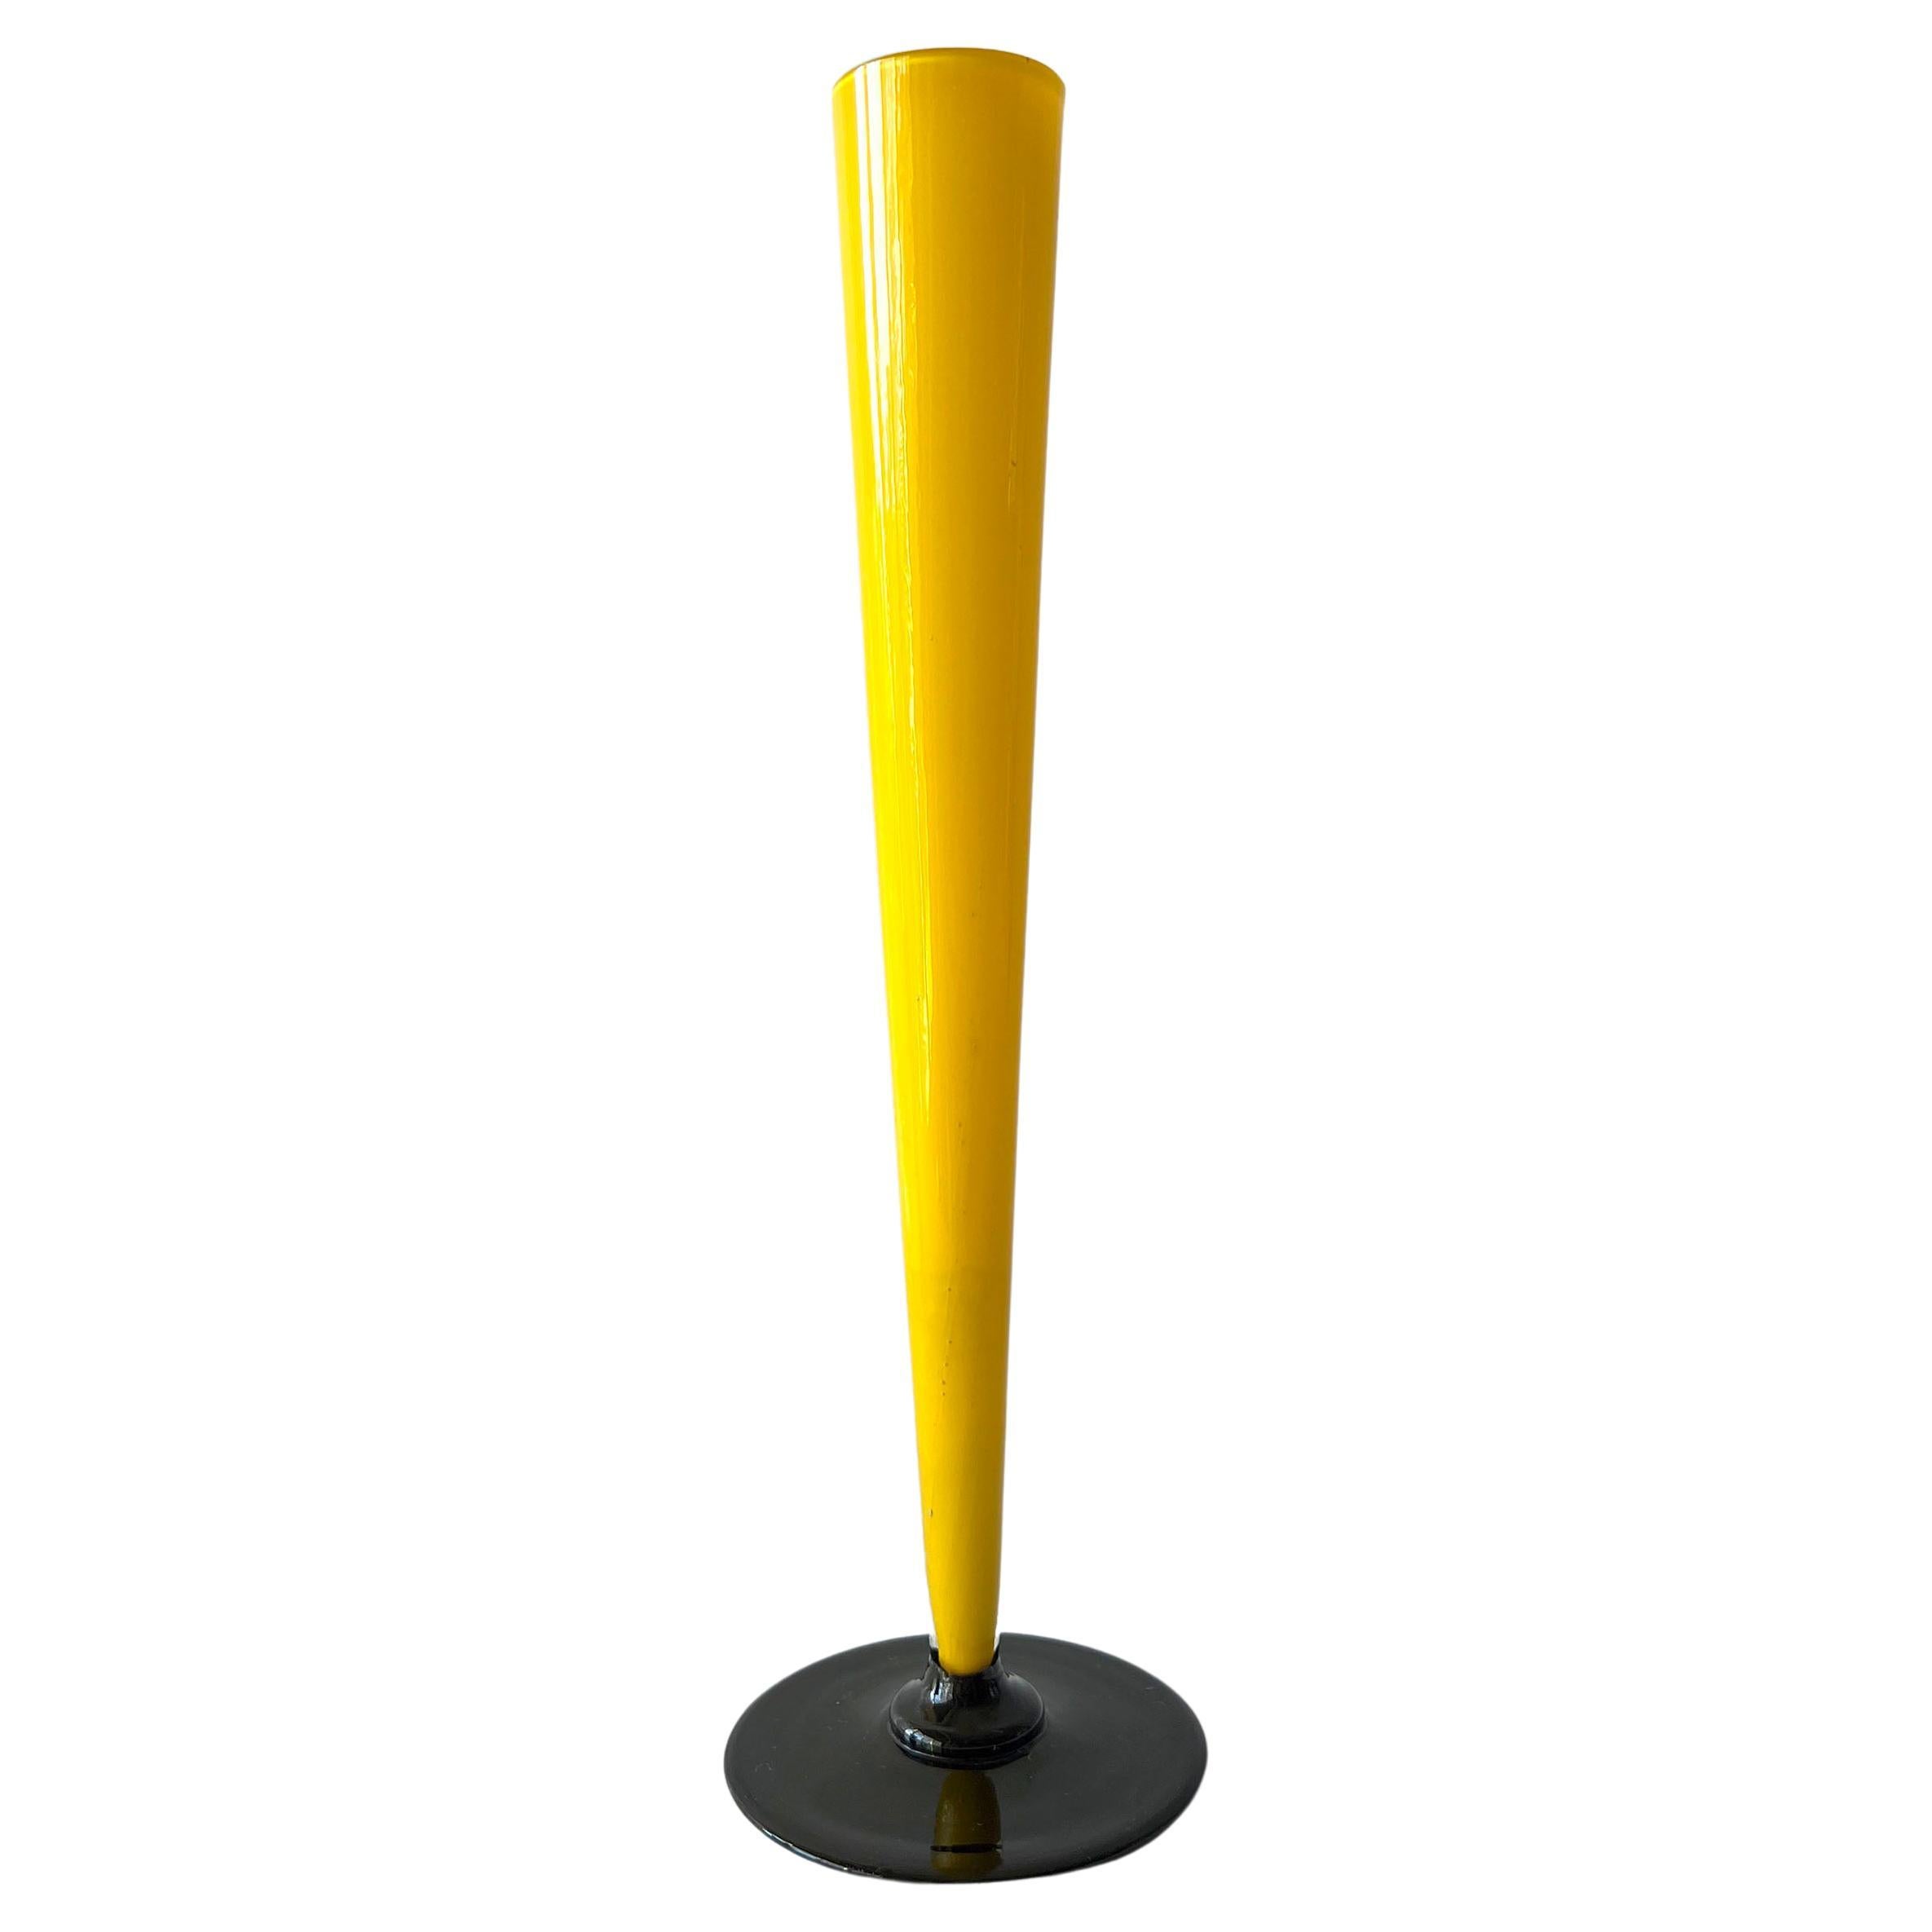 Tschechoslowakische Streamline-Vase im Art déco-Stil, gelb und schwarz, 1930er Jahre